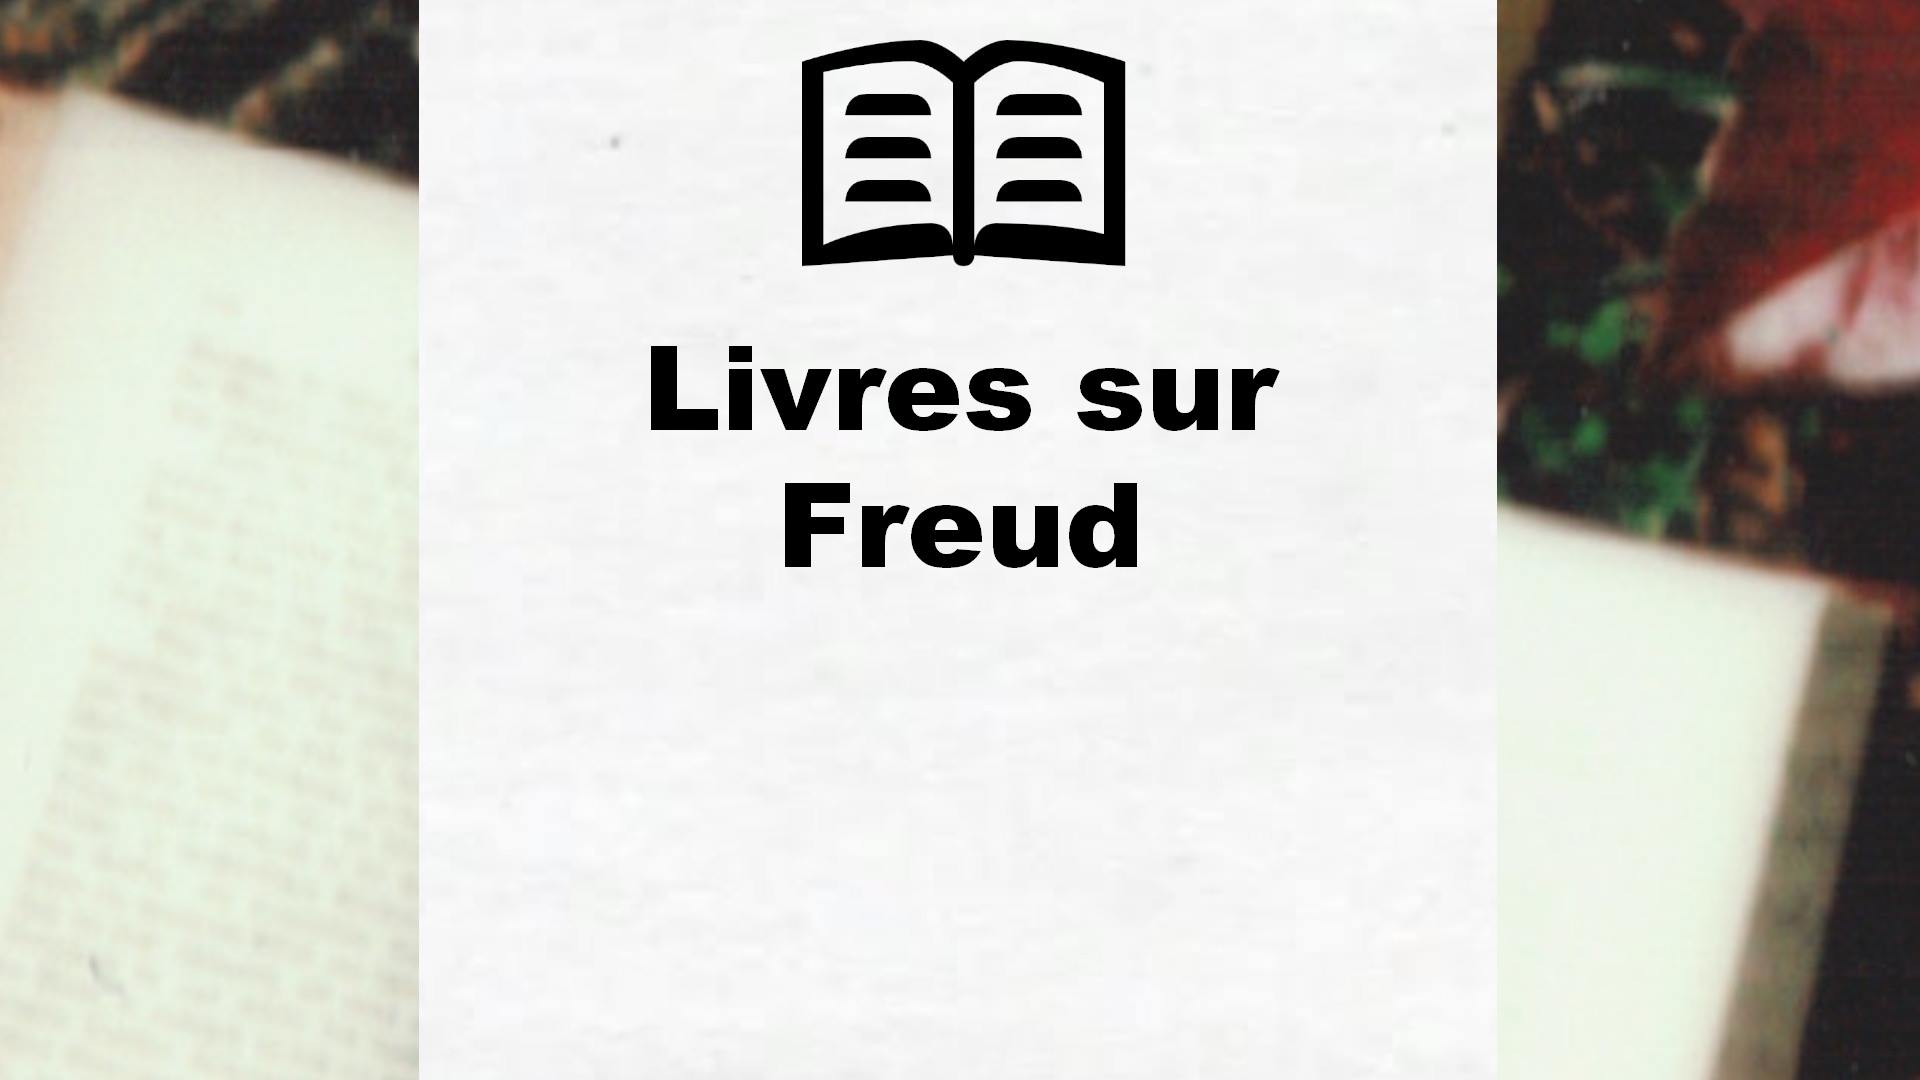 Livres sur Freud